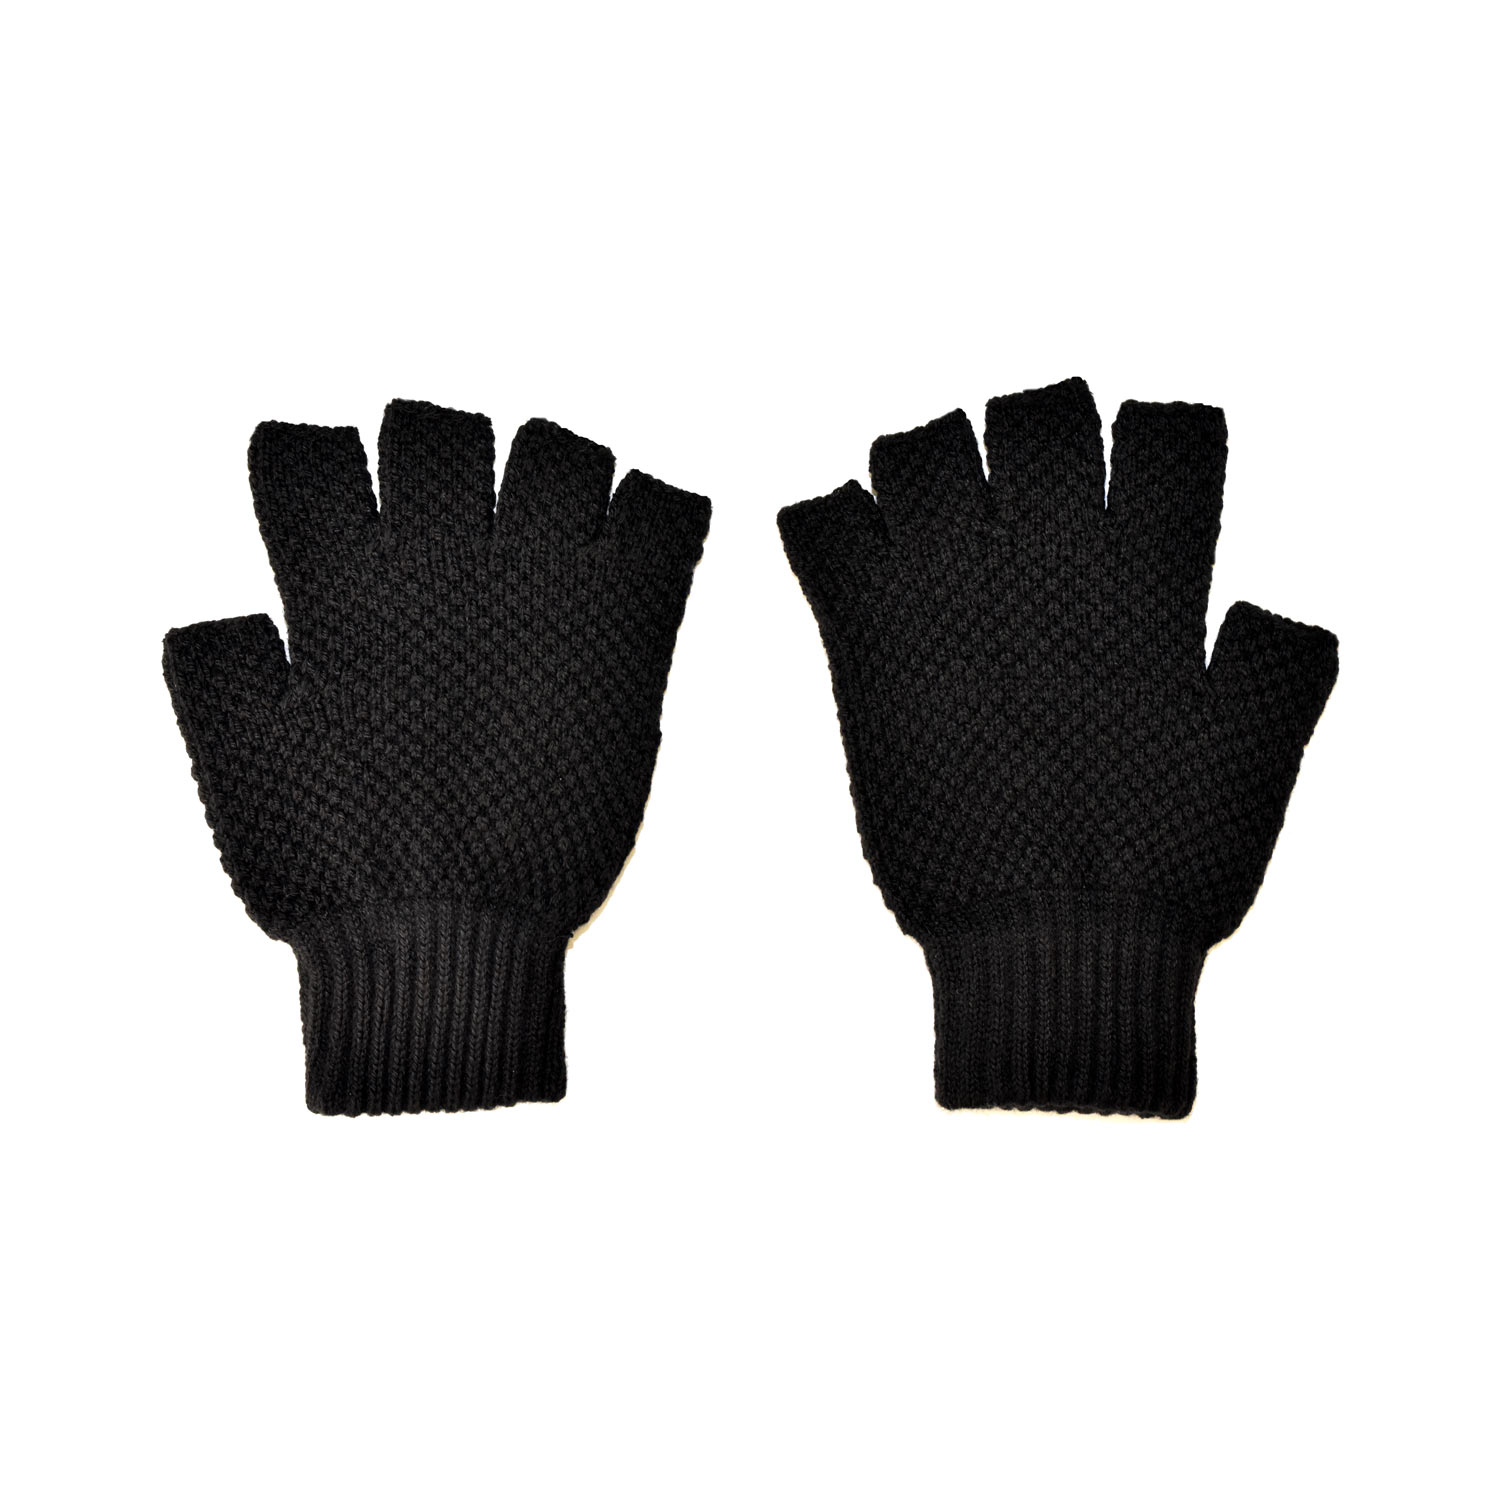 Adult Black Fingerless Gloves